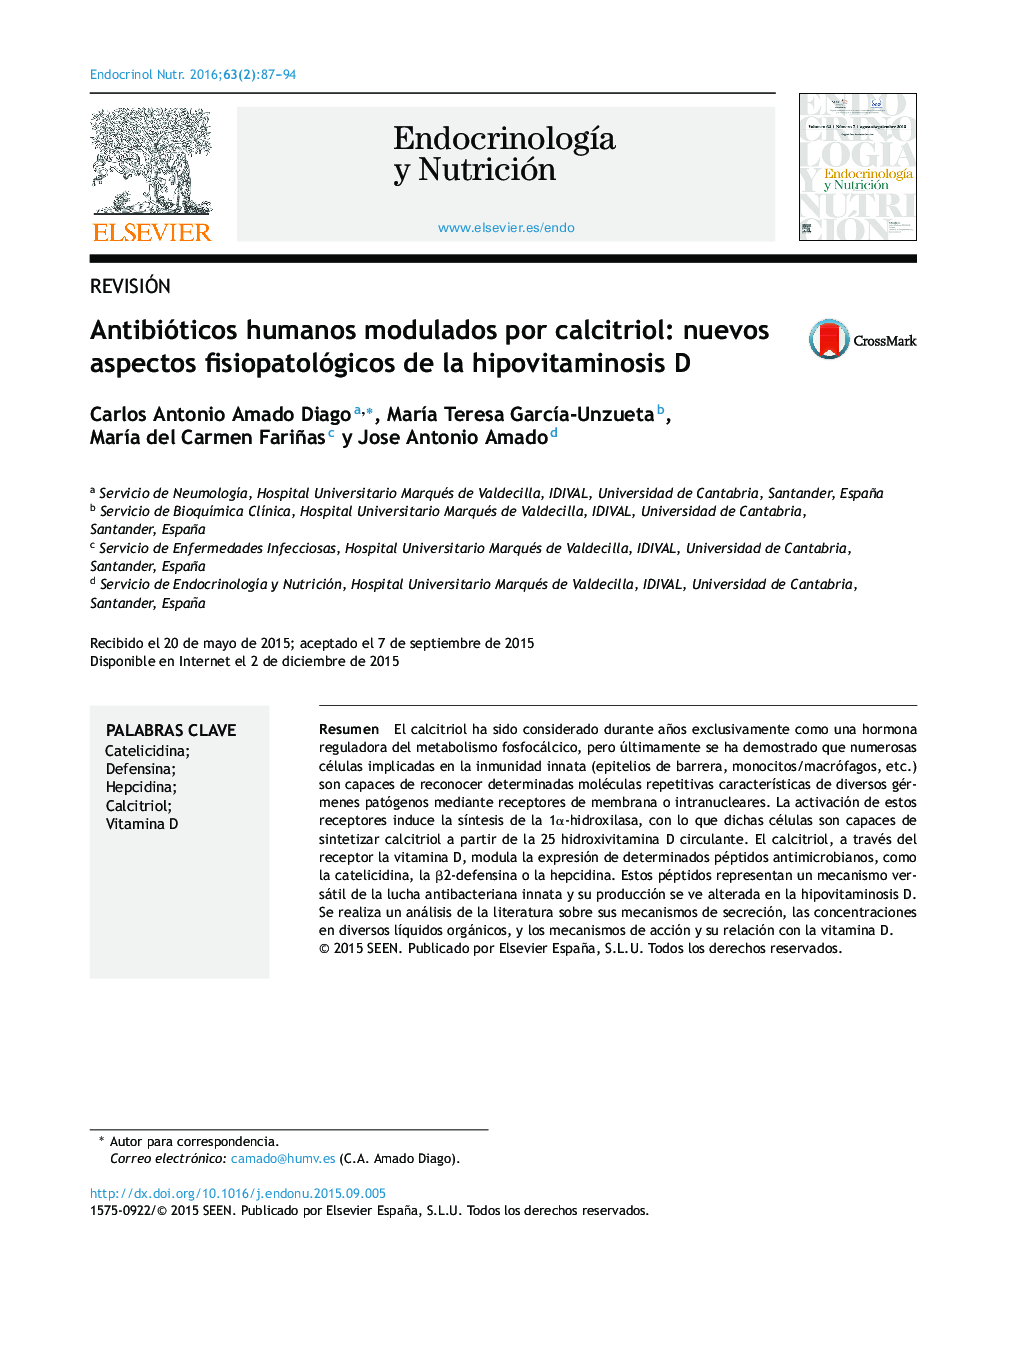 Antibióticos humanos modulados por calcitriol: nuevos aspectos fisiopatológicos de la hipovitaminosis D